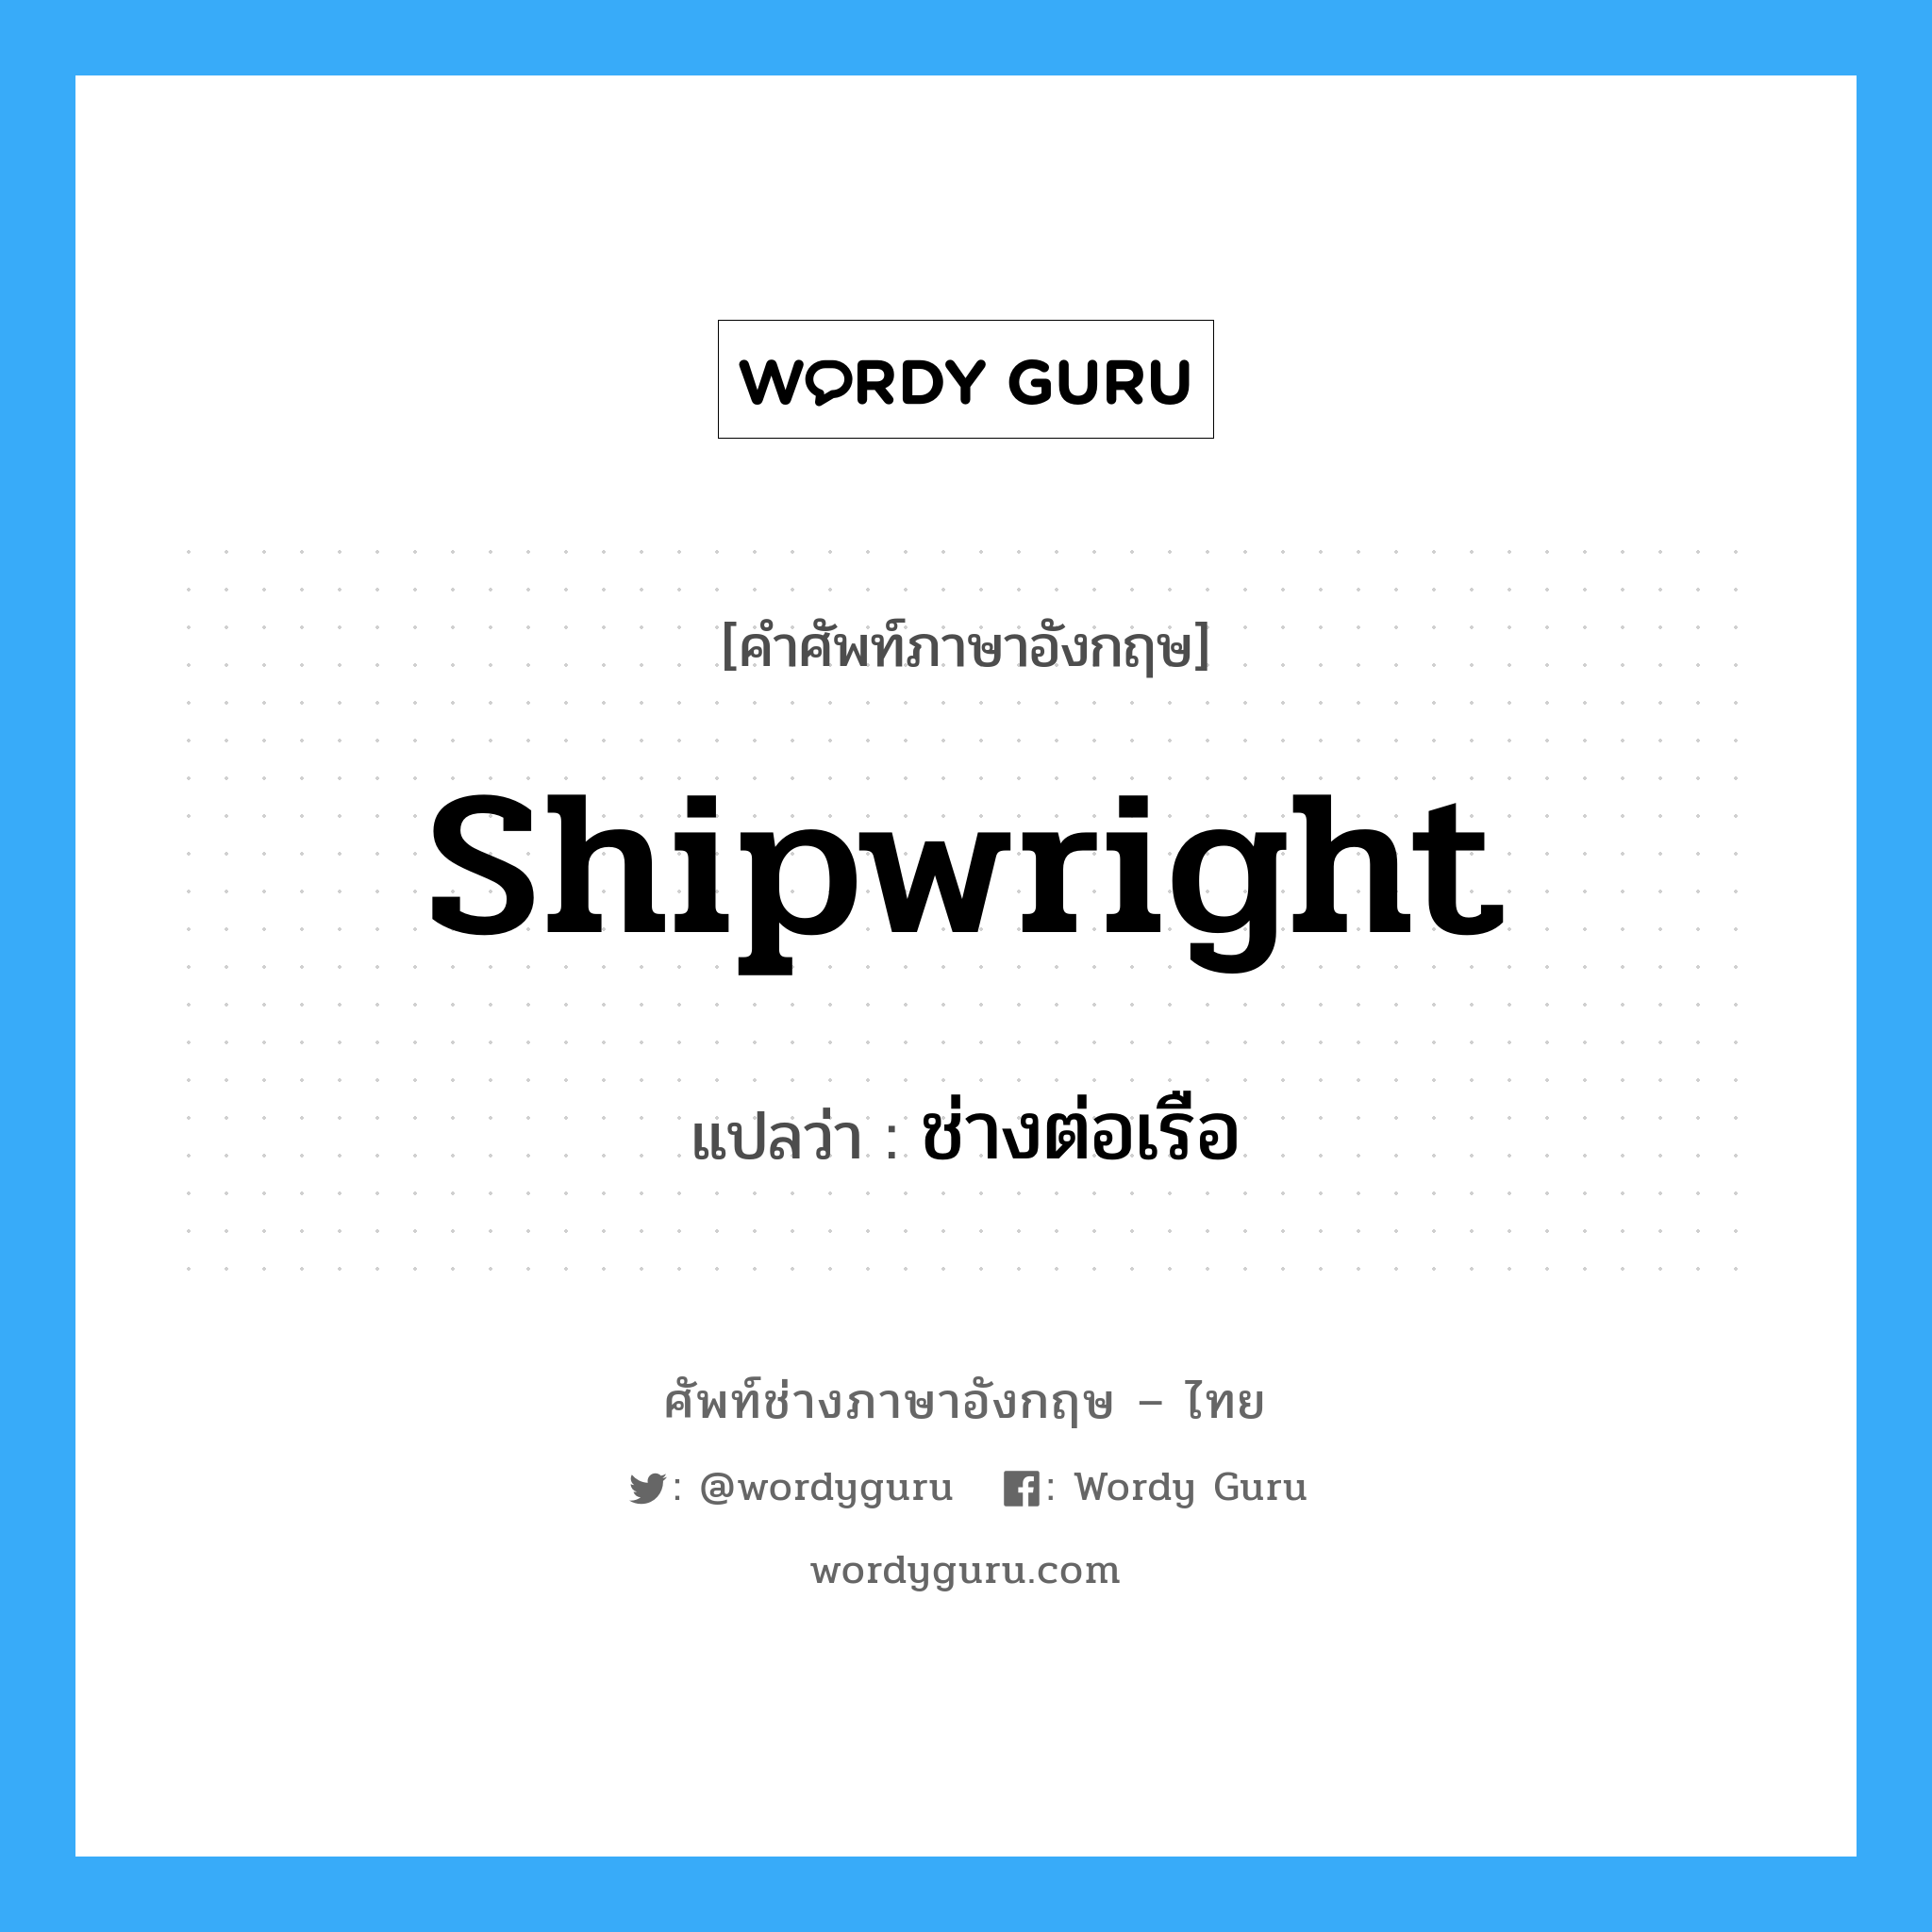 ช่างต่อเรือ ภาษาอังกฤษ?, คำศัพท์ช่างภาษาอังกฤษ - ไทย ช่างต่อเรือ คำศัพท์ภาษาอังกฤษ ช่างต่อเรือ แปลว่า shipwright